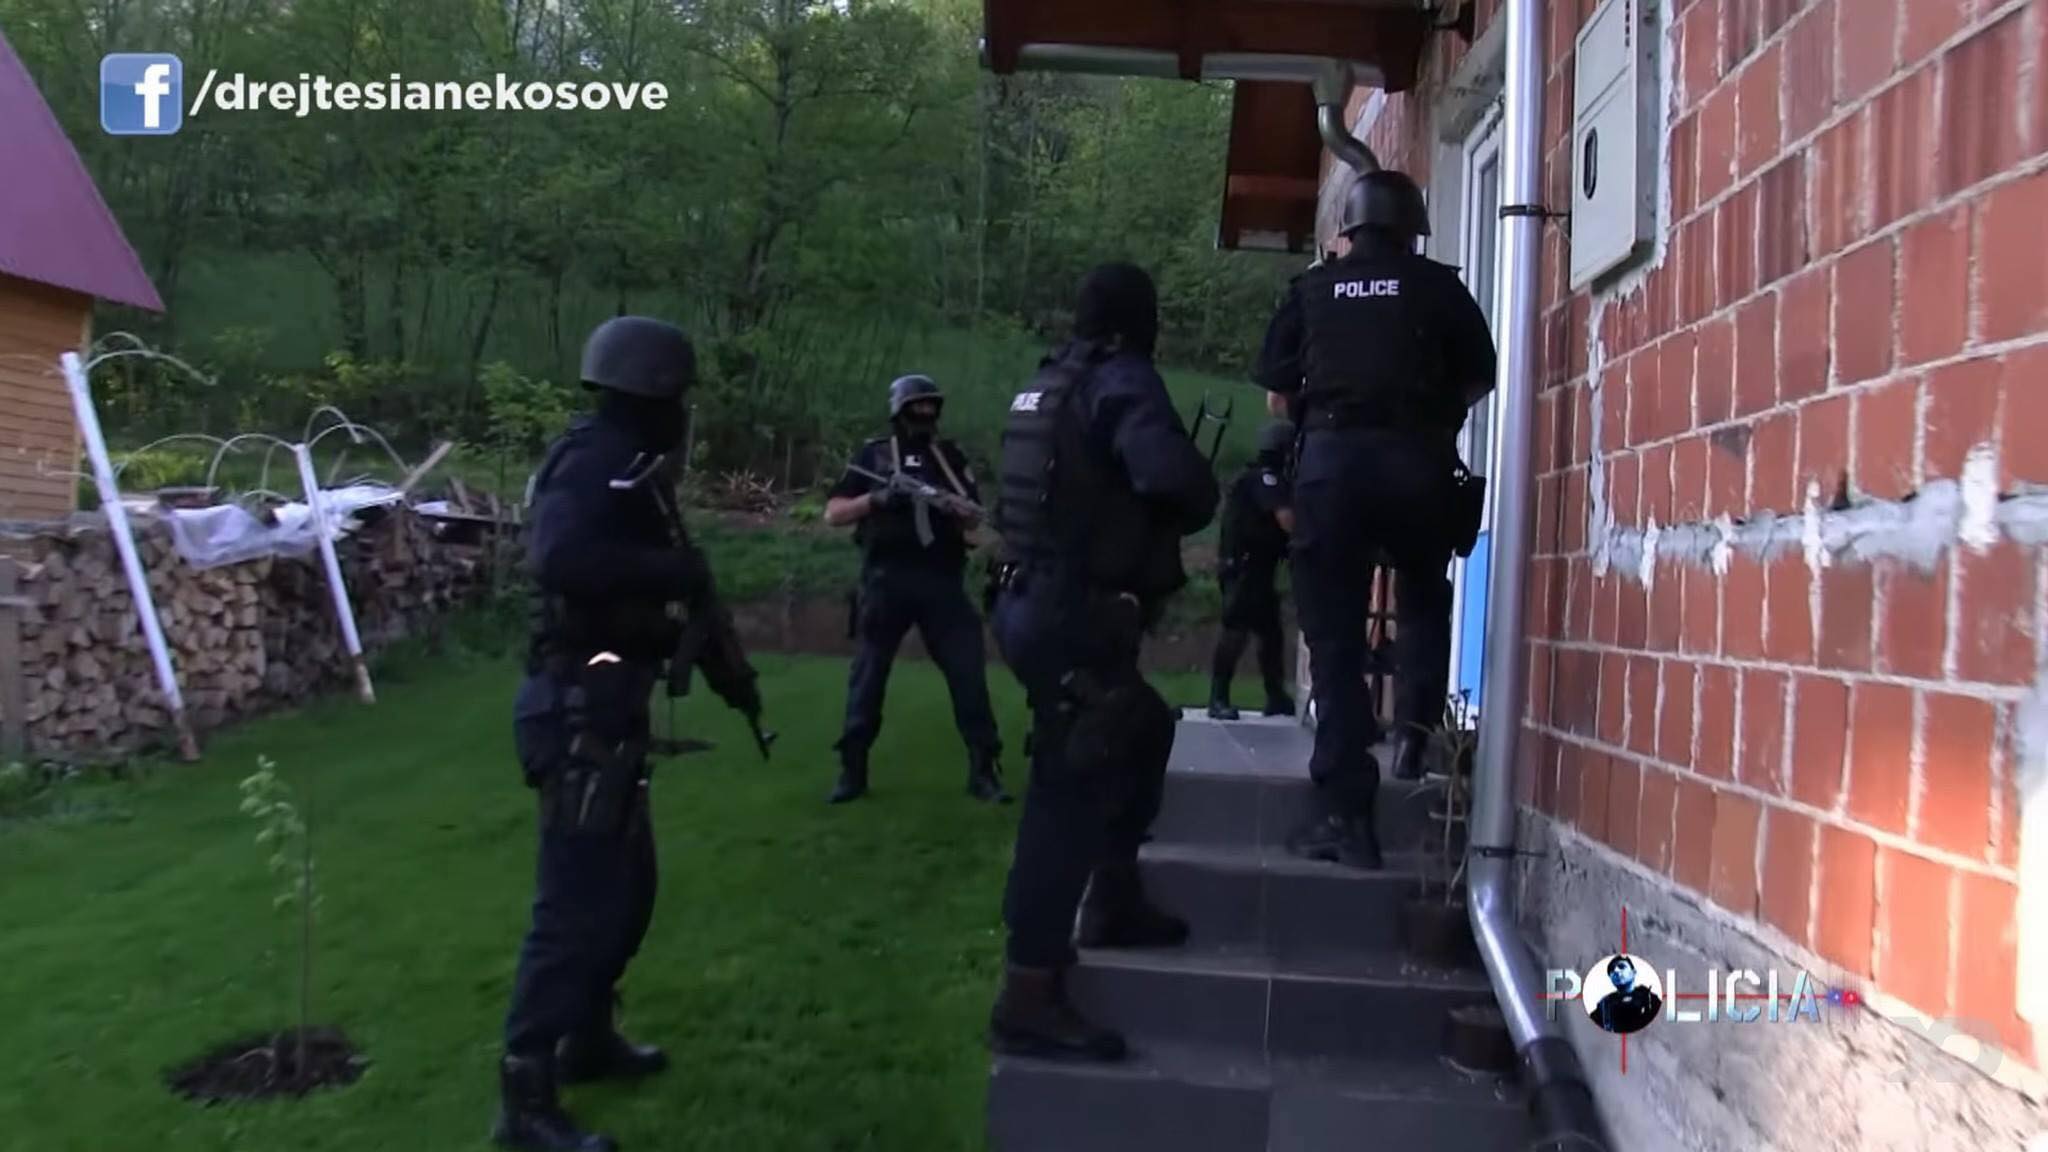  Policia aksion në Podujevë, bastisje dhe arrestime në Gllamnik dhe në një lokacion në qytet